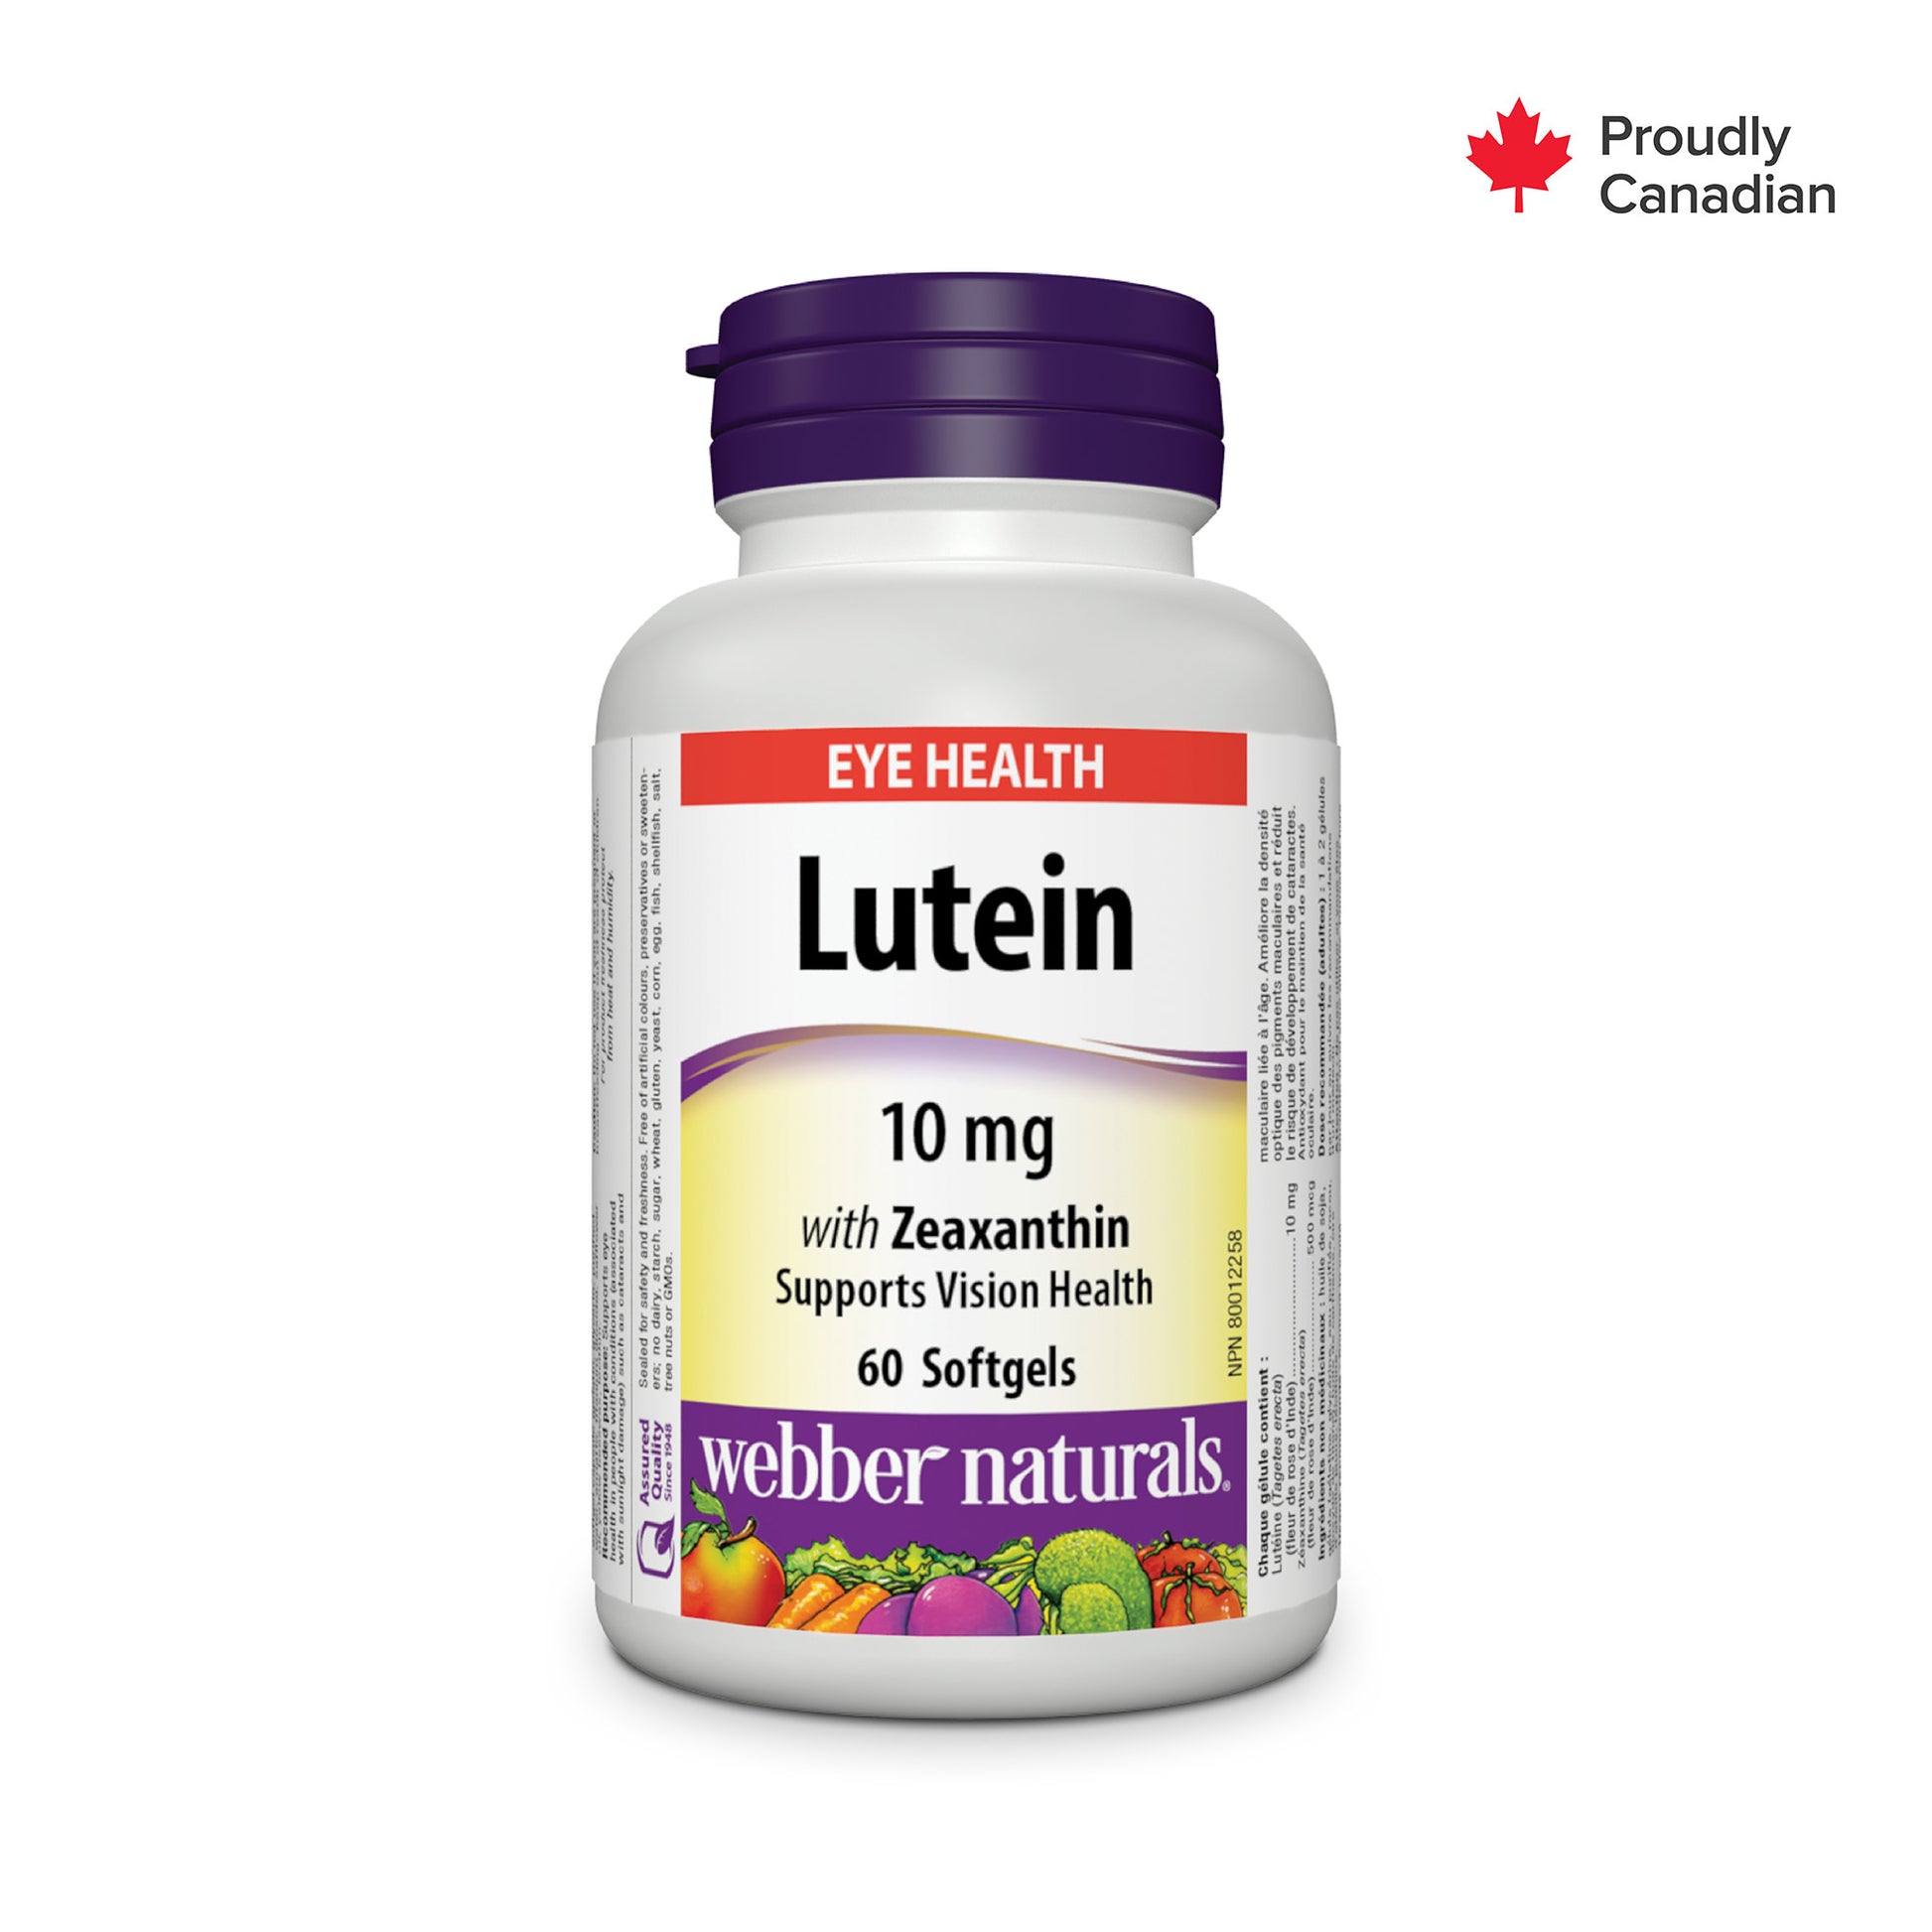 Lutéine avec zéaxanthine 10 mg for Webber Naturals|v|hi-res|WN3366